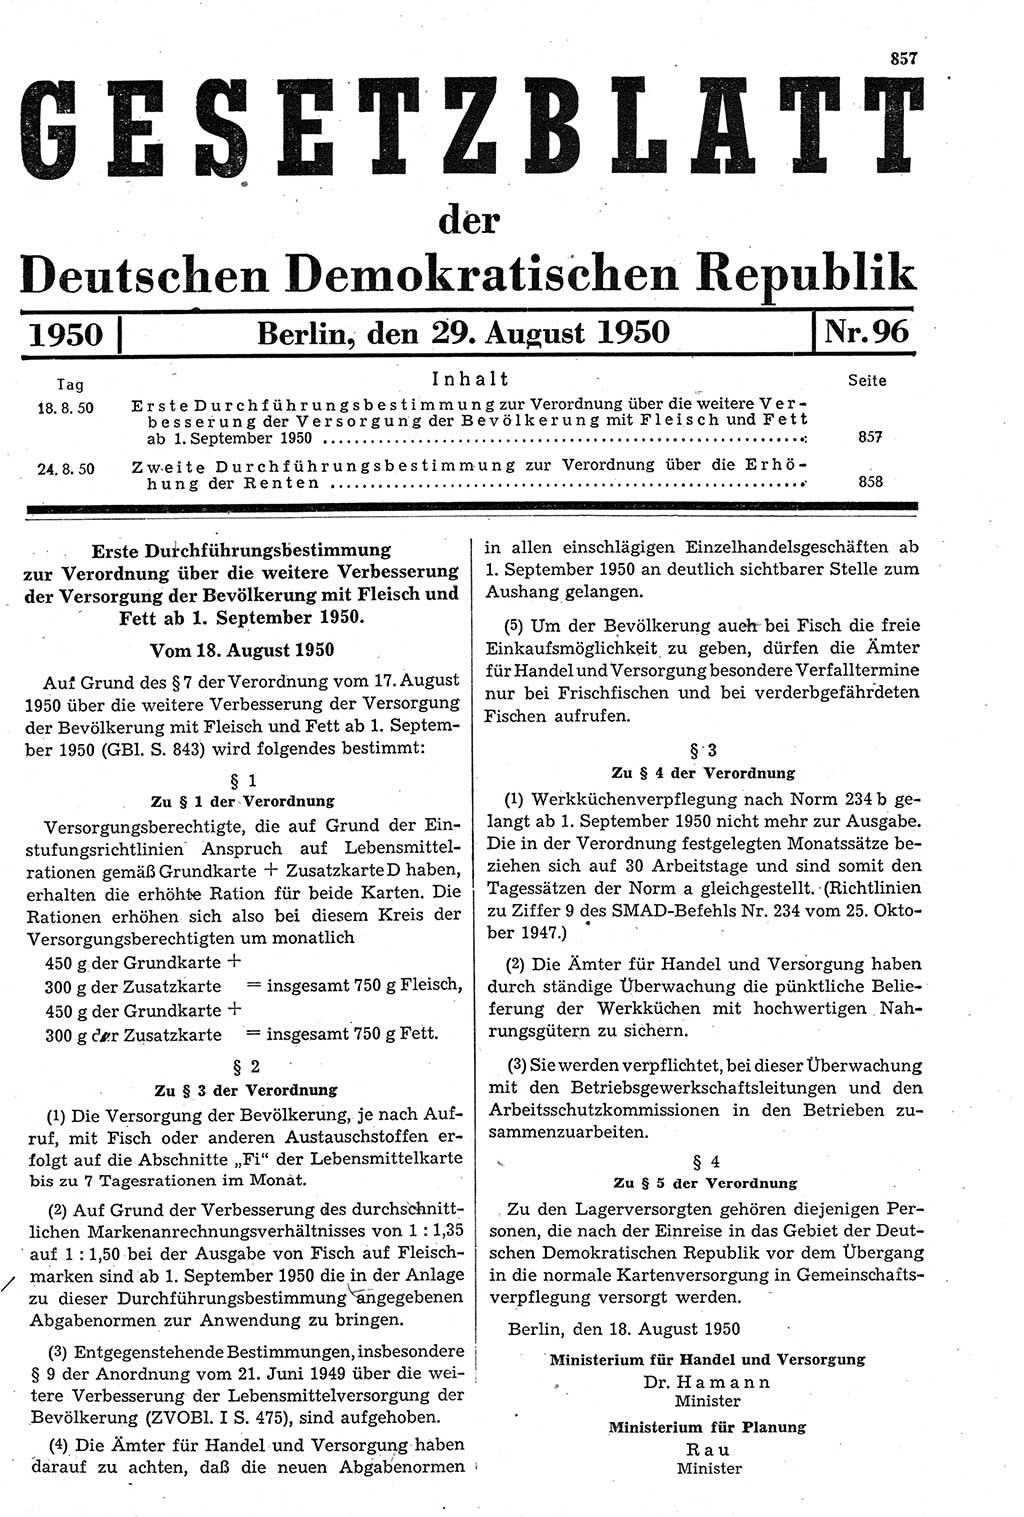 Gesetzblatt (GBl.) der Deutschen Demokratischen Republik (DDR) 1950, Seite 857 (GBl. DDR 1950, S. 857)